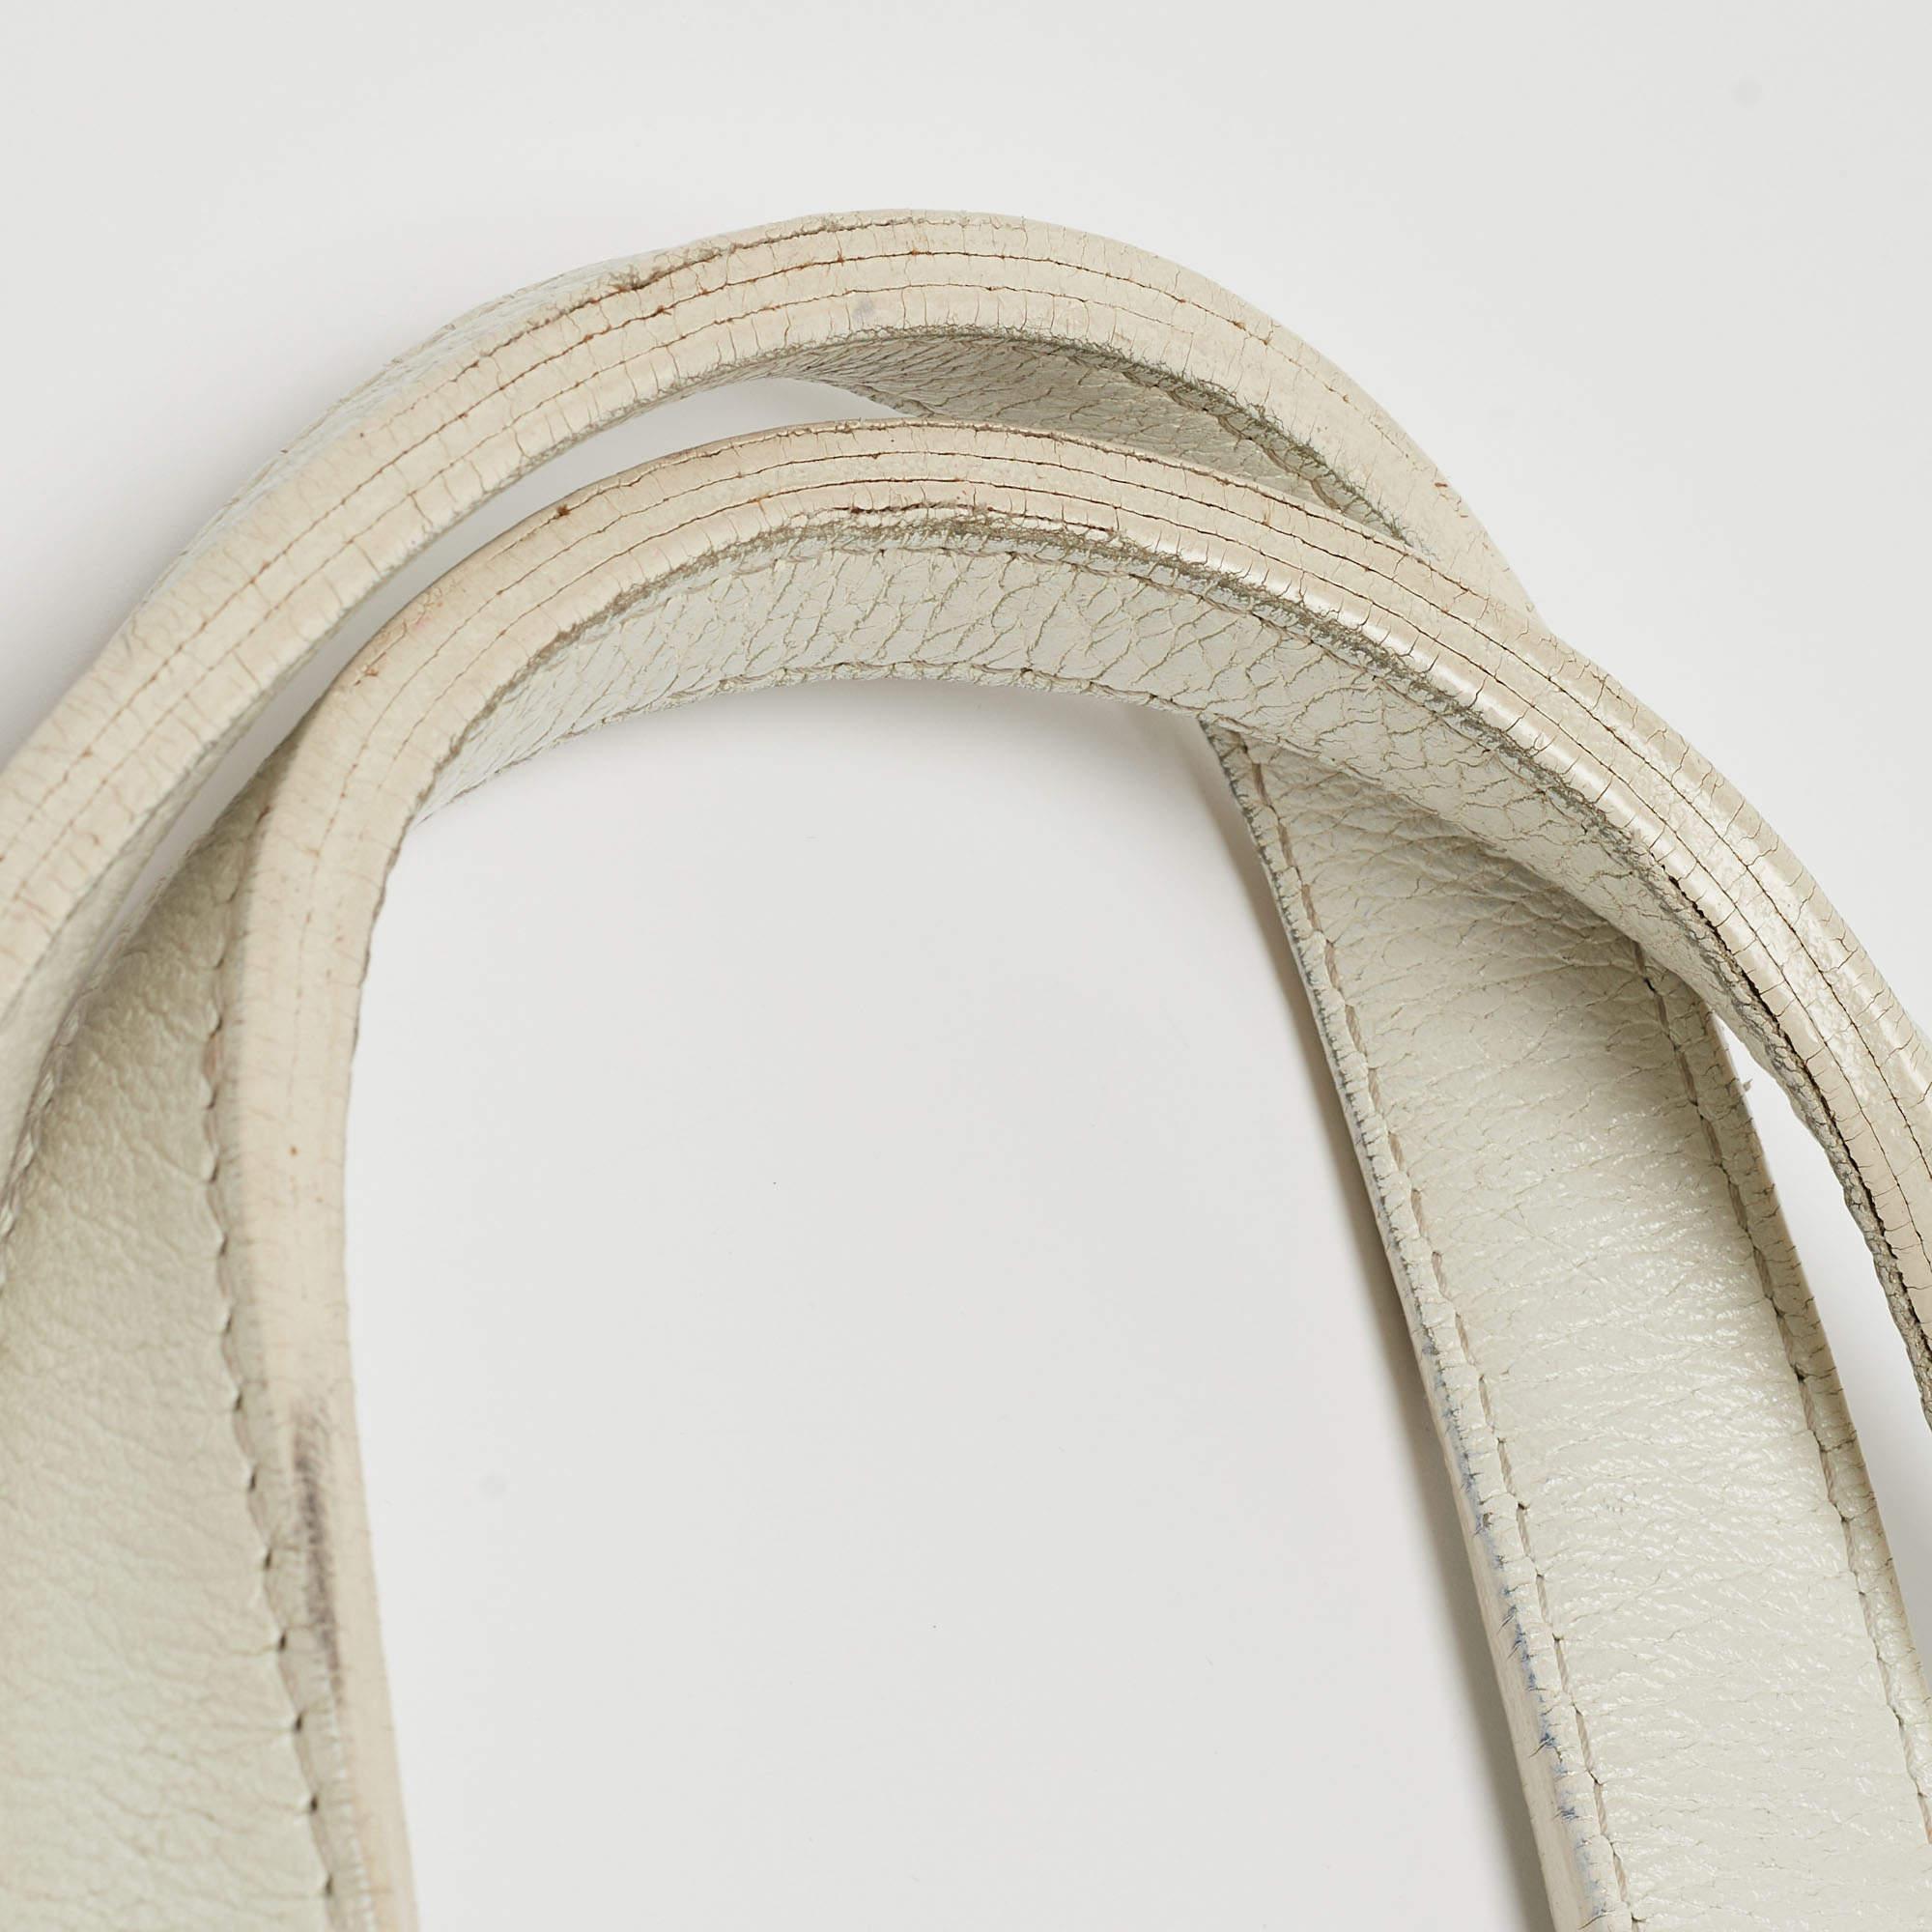 Burberry White Woven Leather Tote In Good Condition For Sale In Dubai, Al Qouz 2